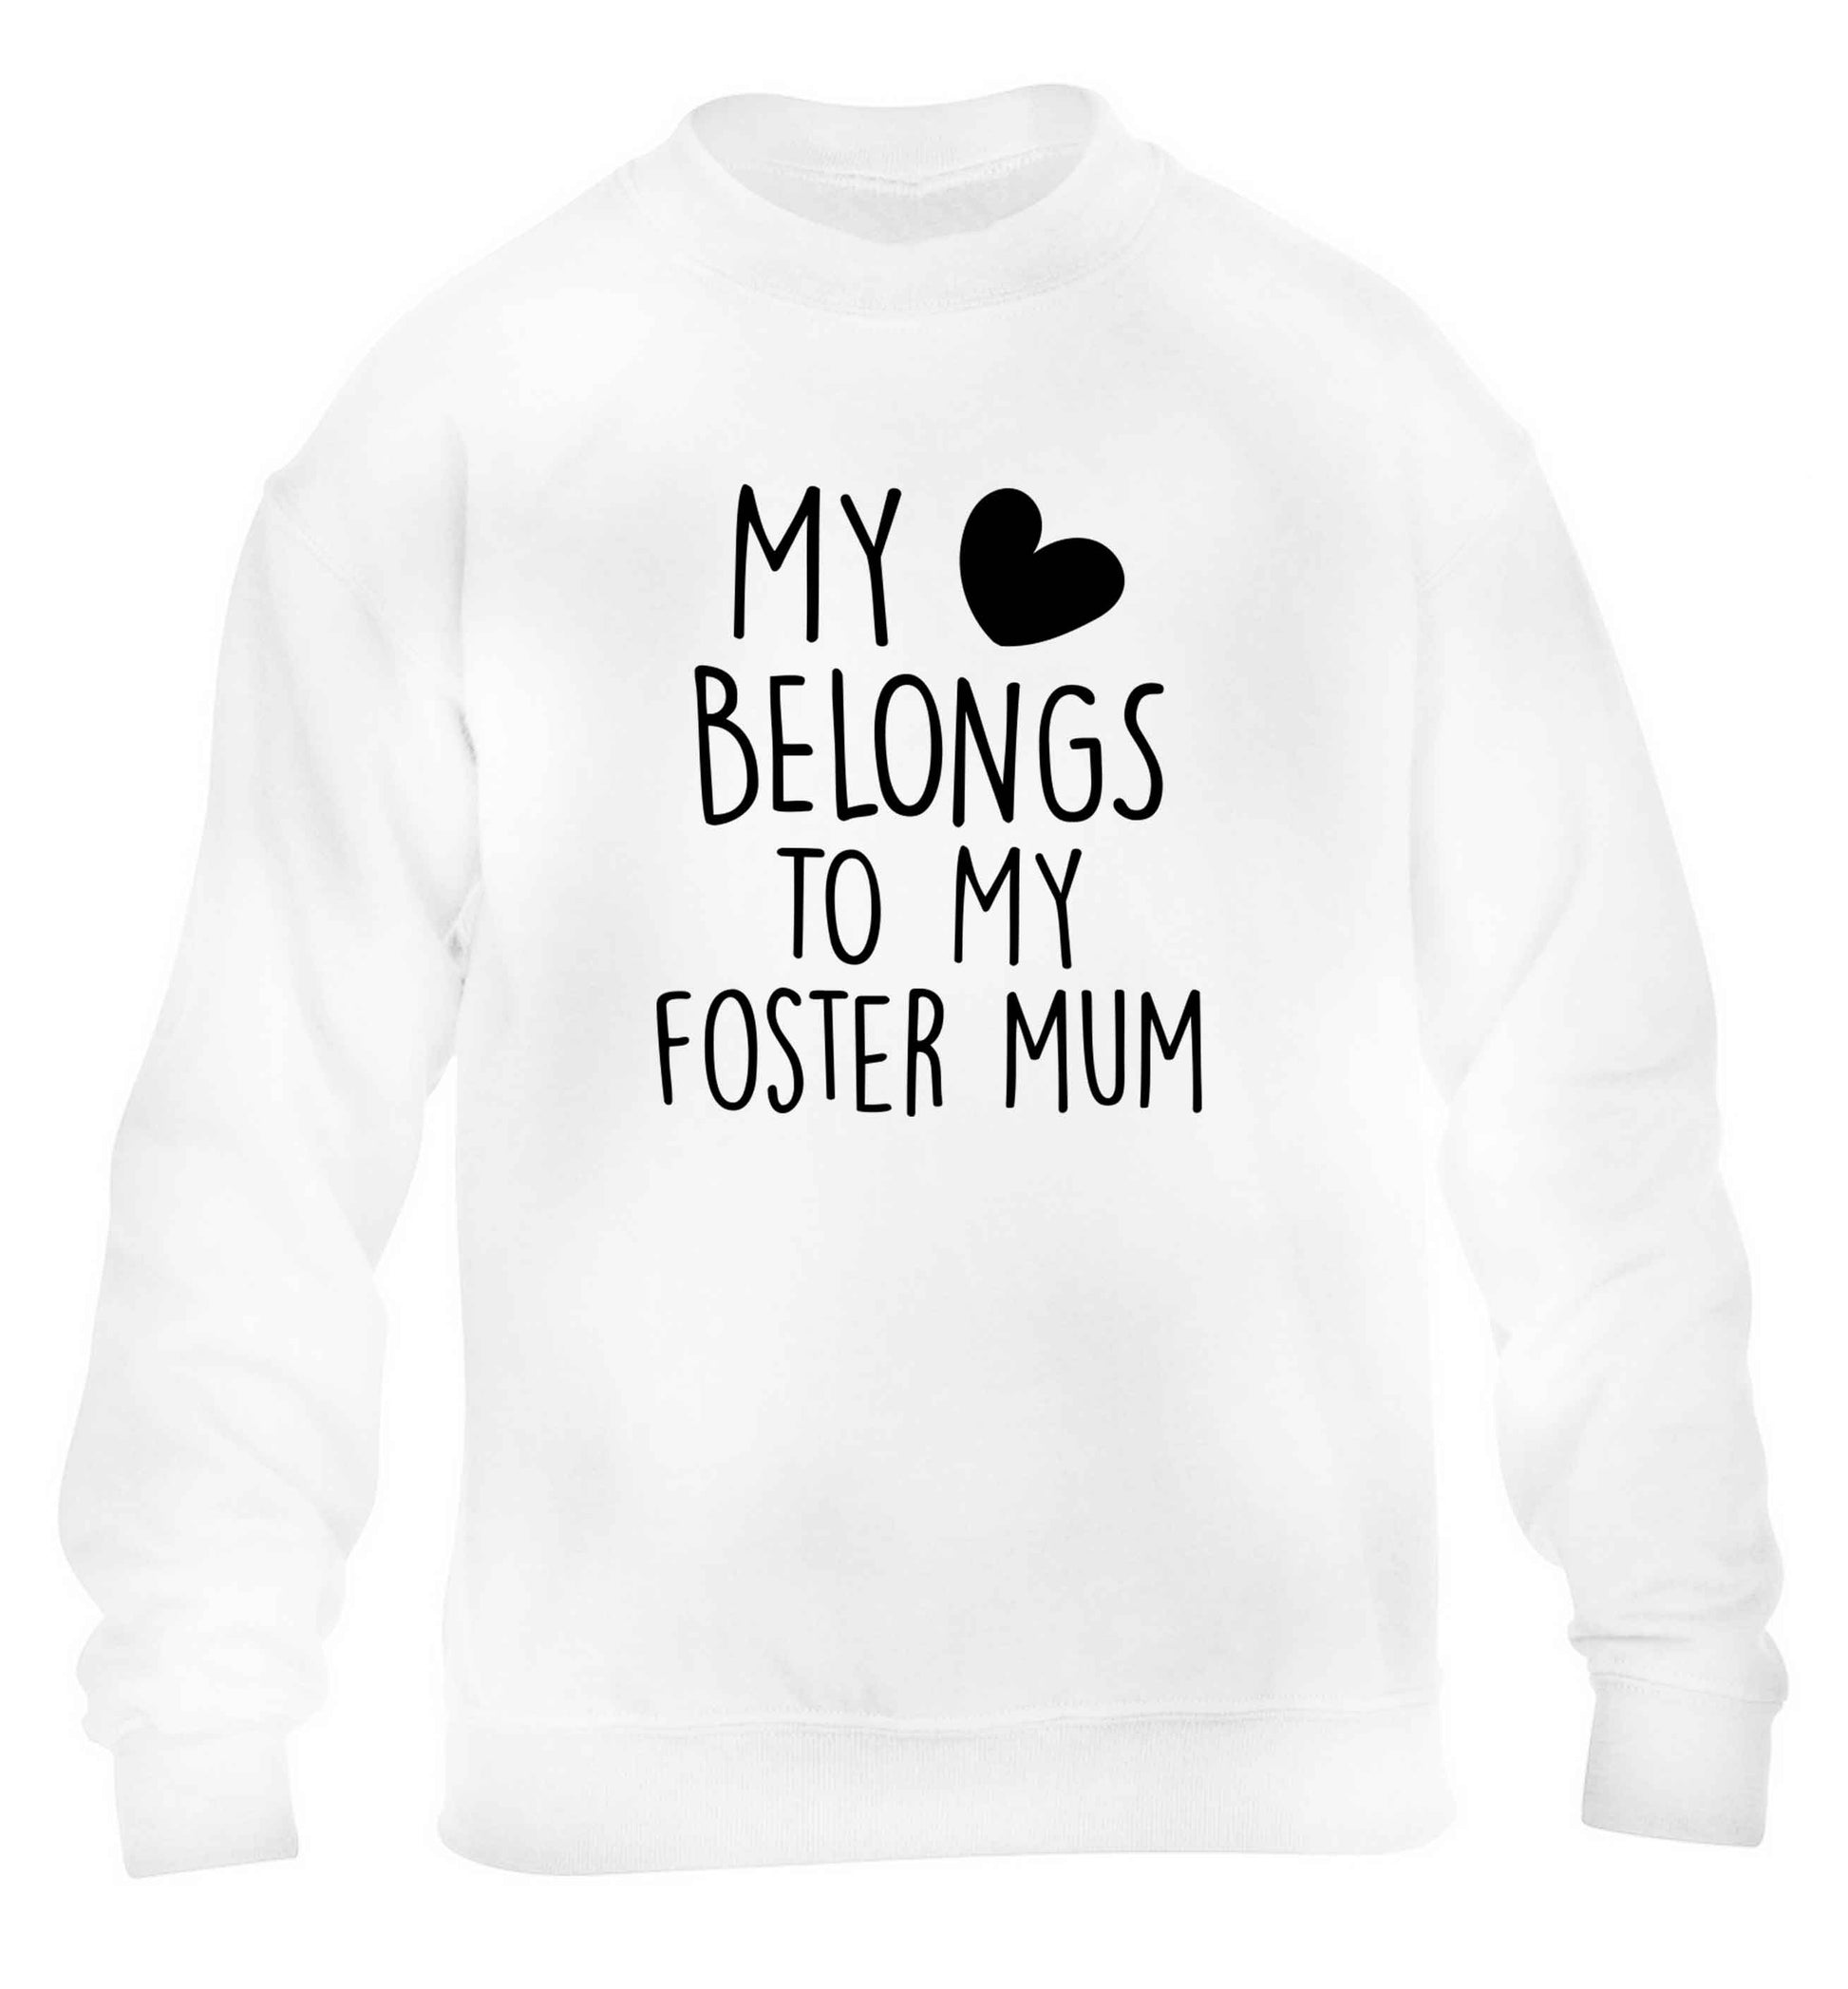 My heart belongs to my foster mum children's white sweater 12-13 Years